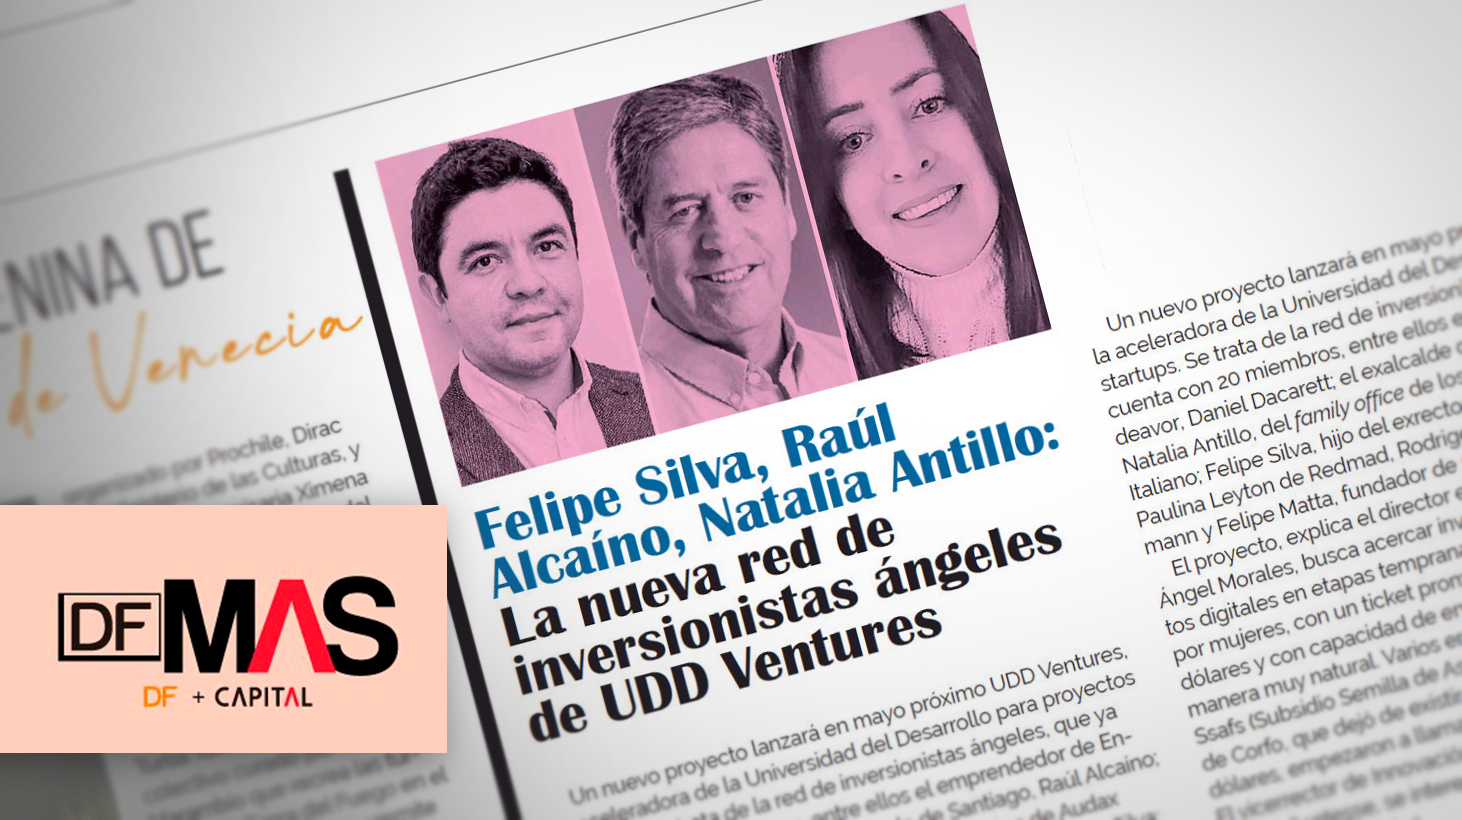 Felipe Silva, Raúl Alcaíno, Natalia Antillo: La nueva red de inversionistas ángeles de UDD Ventures.